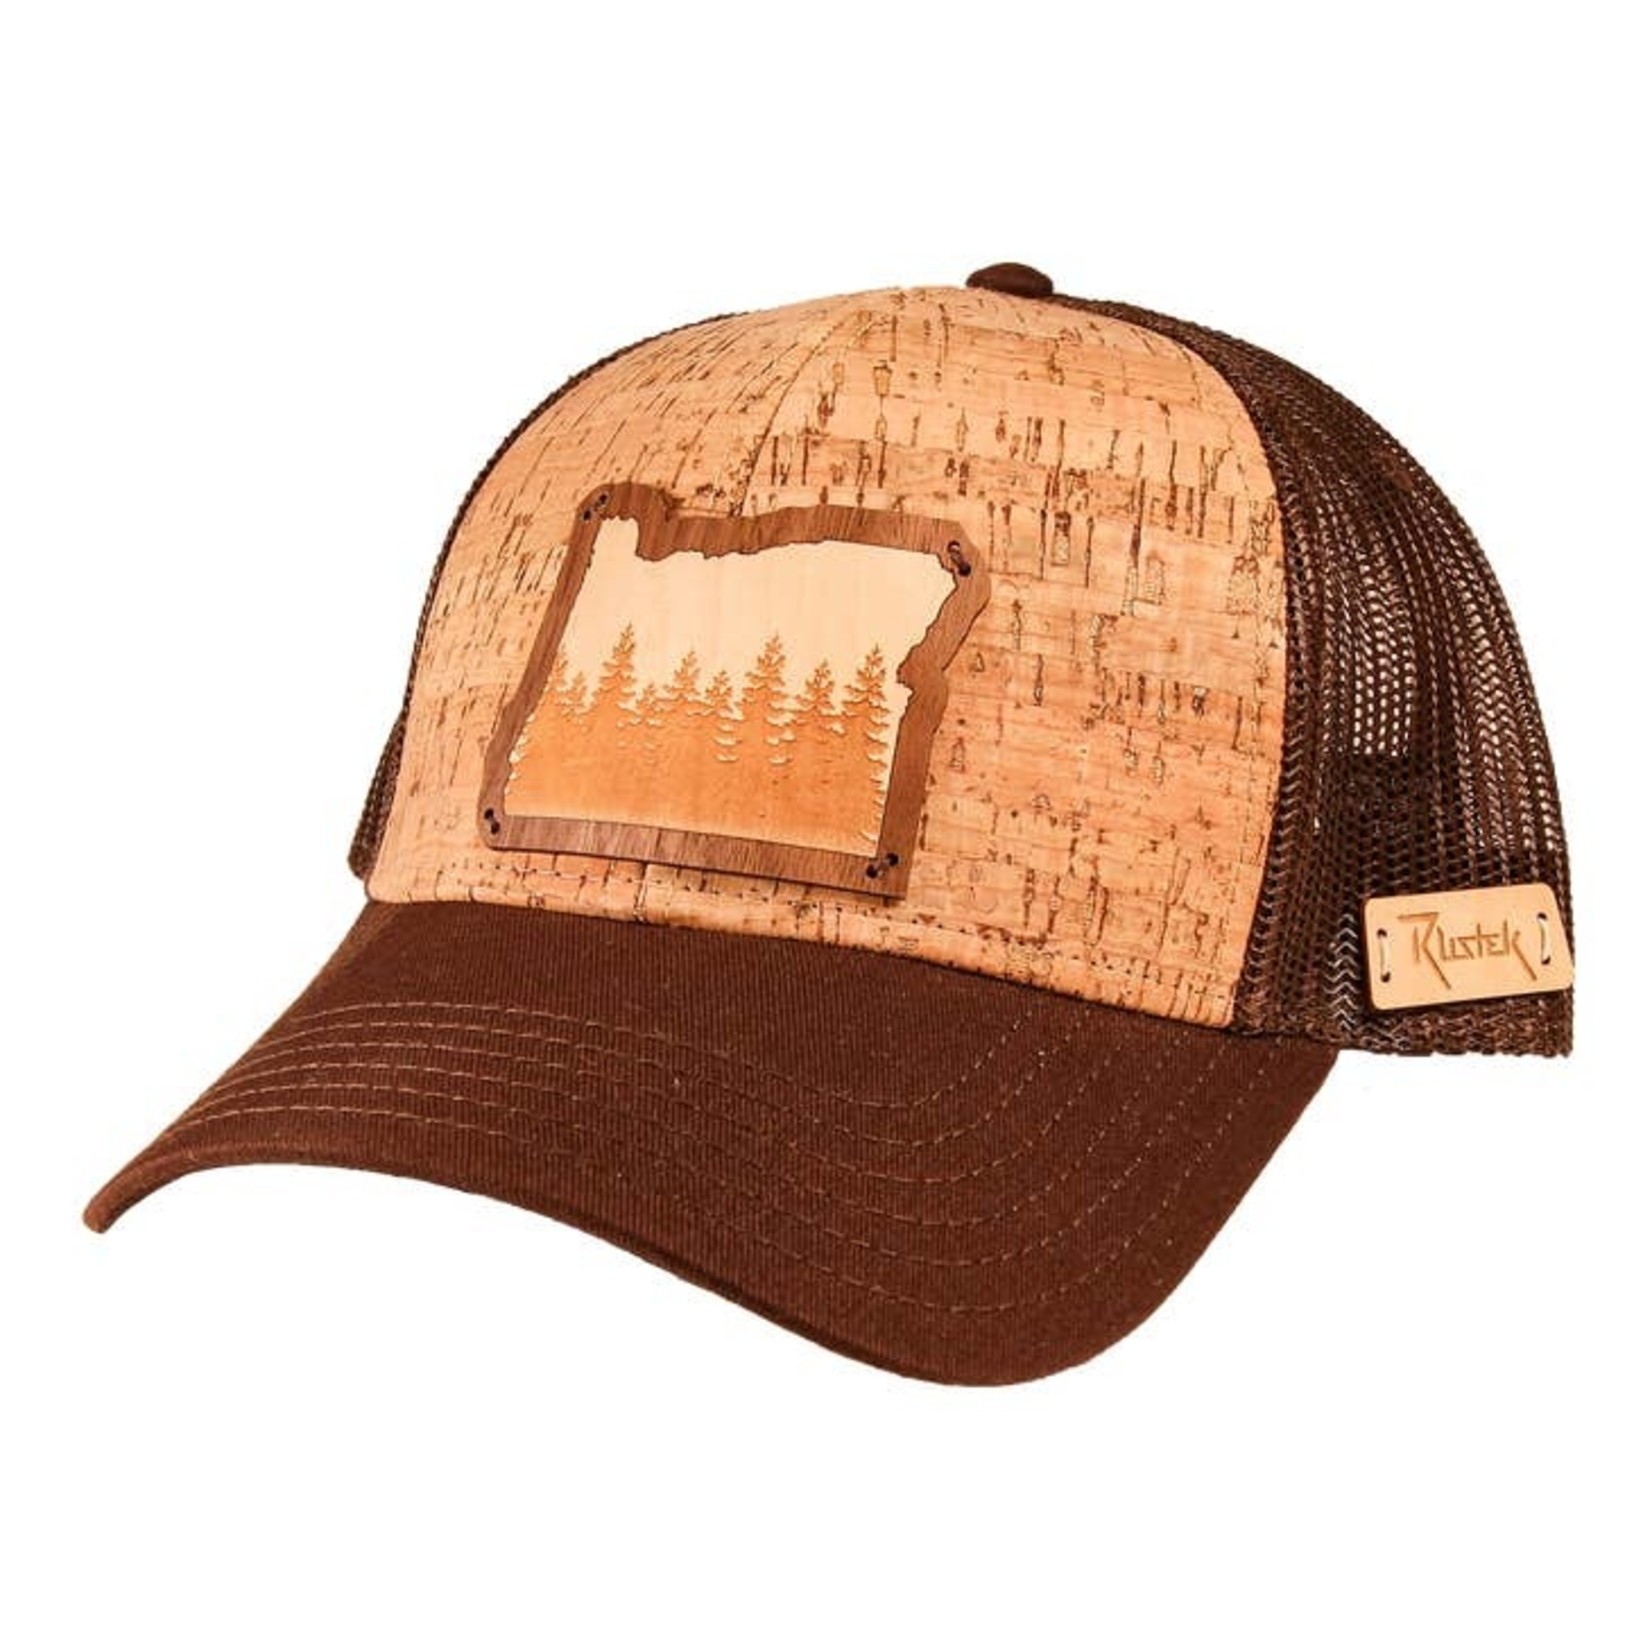 Hats Oregon Treeline Cork Trucker Hat